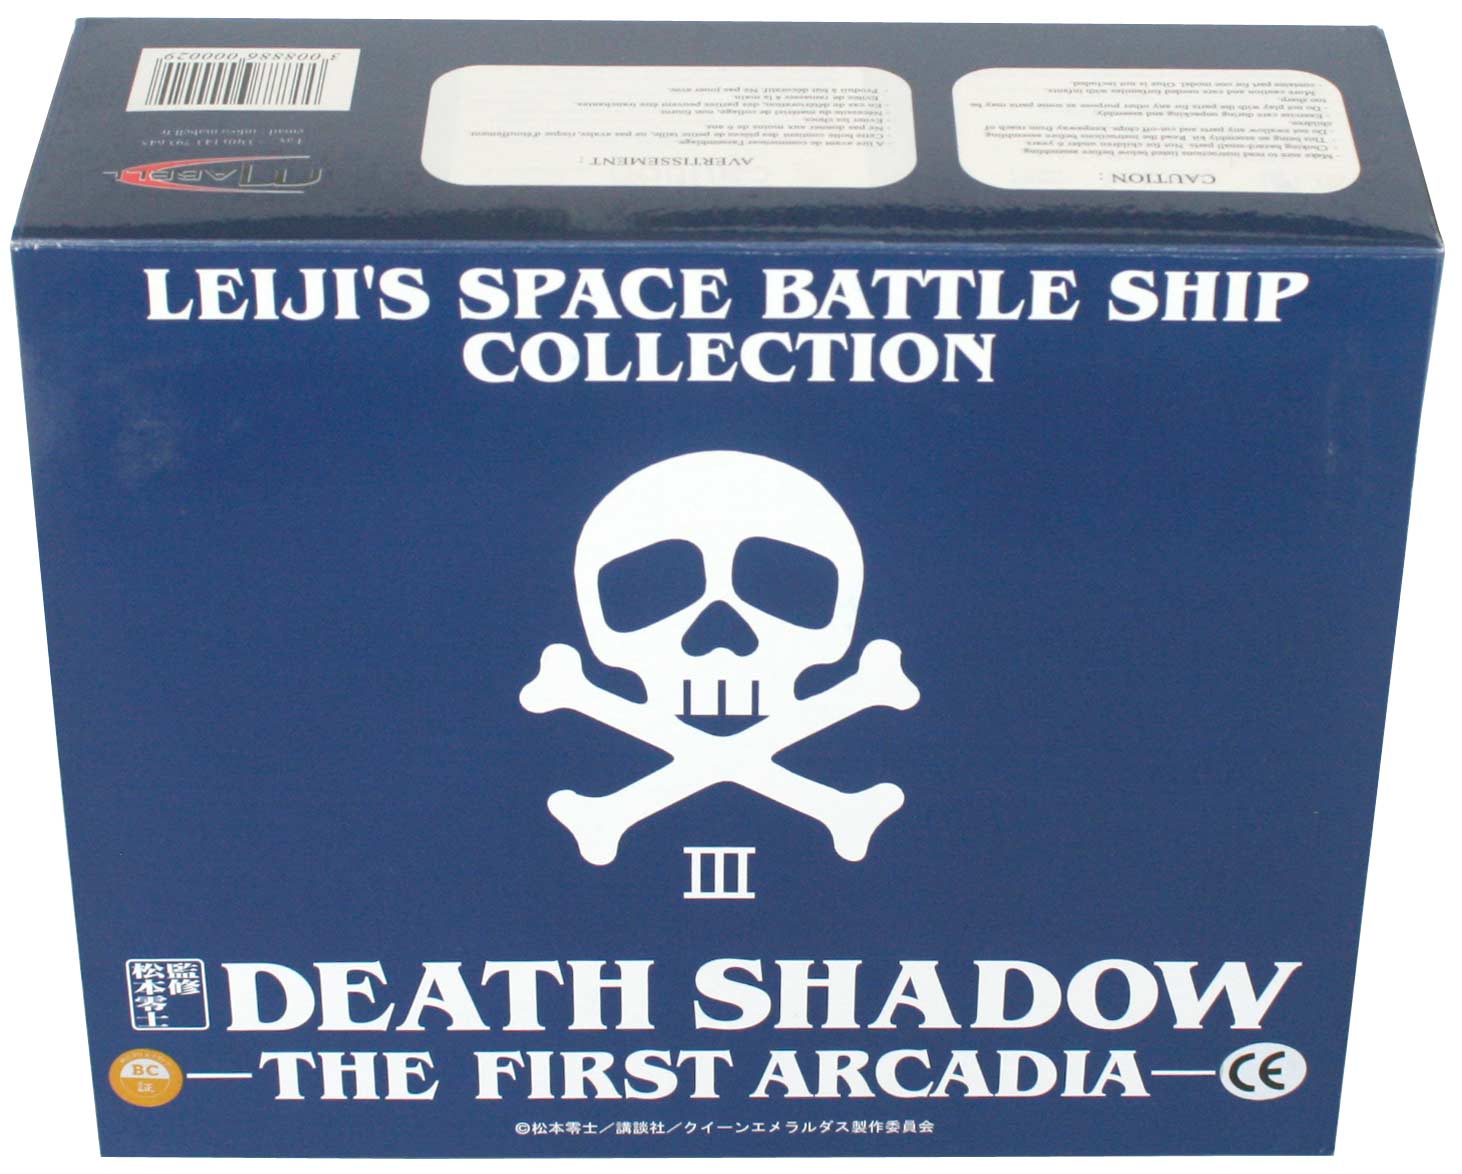 Packaging du Death Shadow de Mabell dans la collection Leiji's Space ship (jouet)